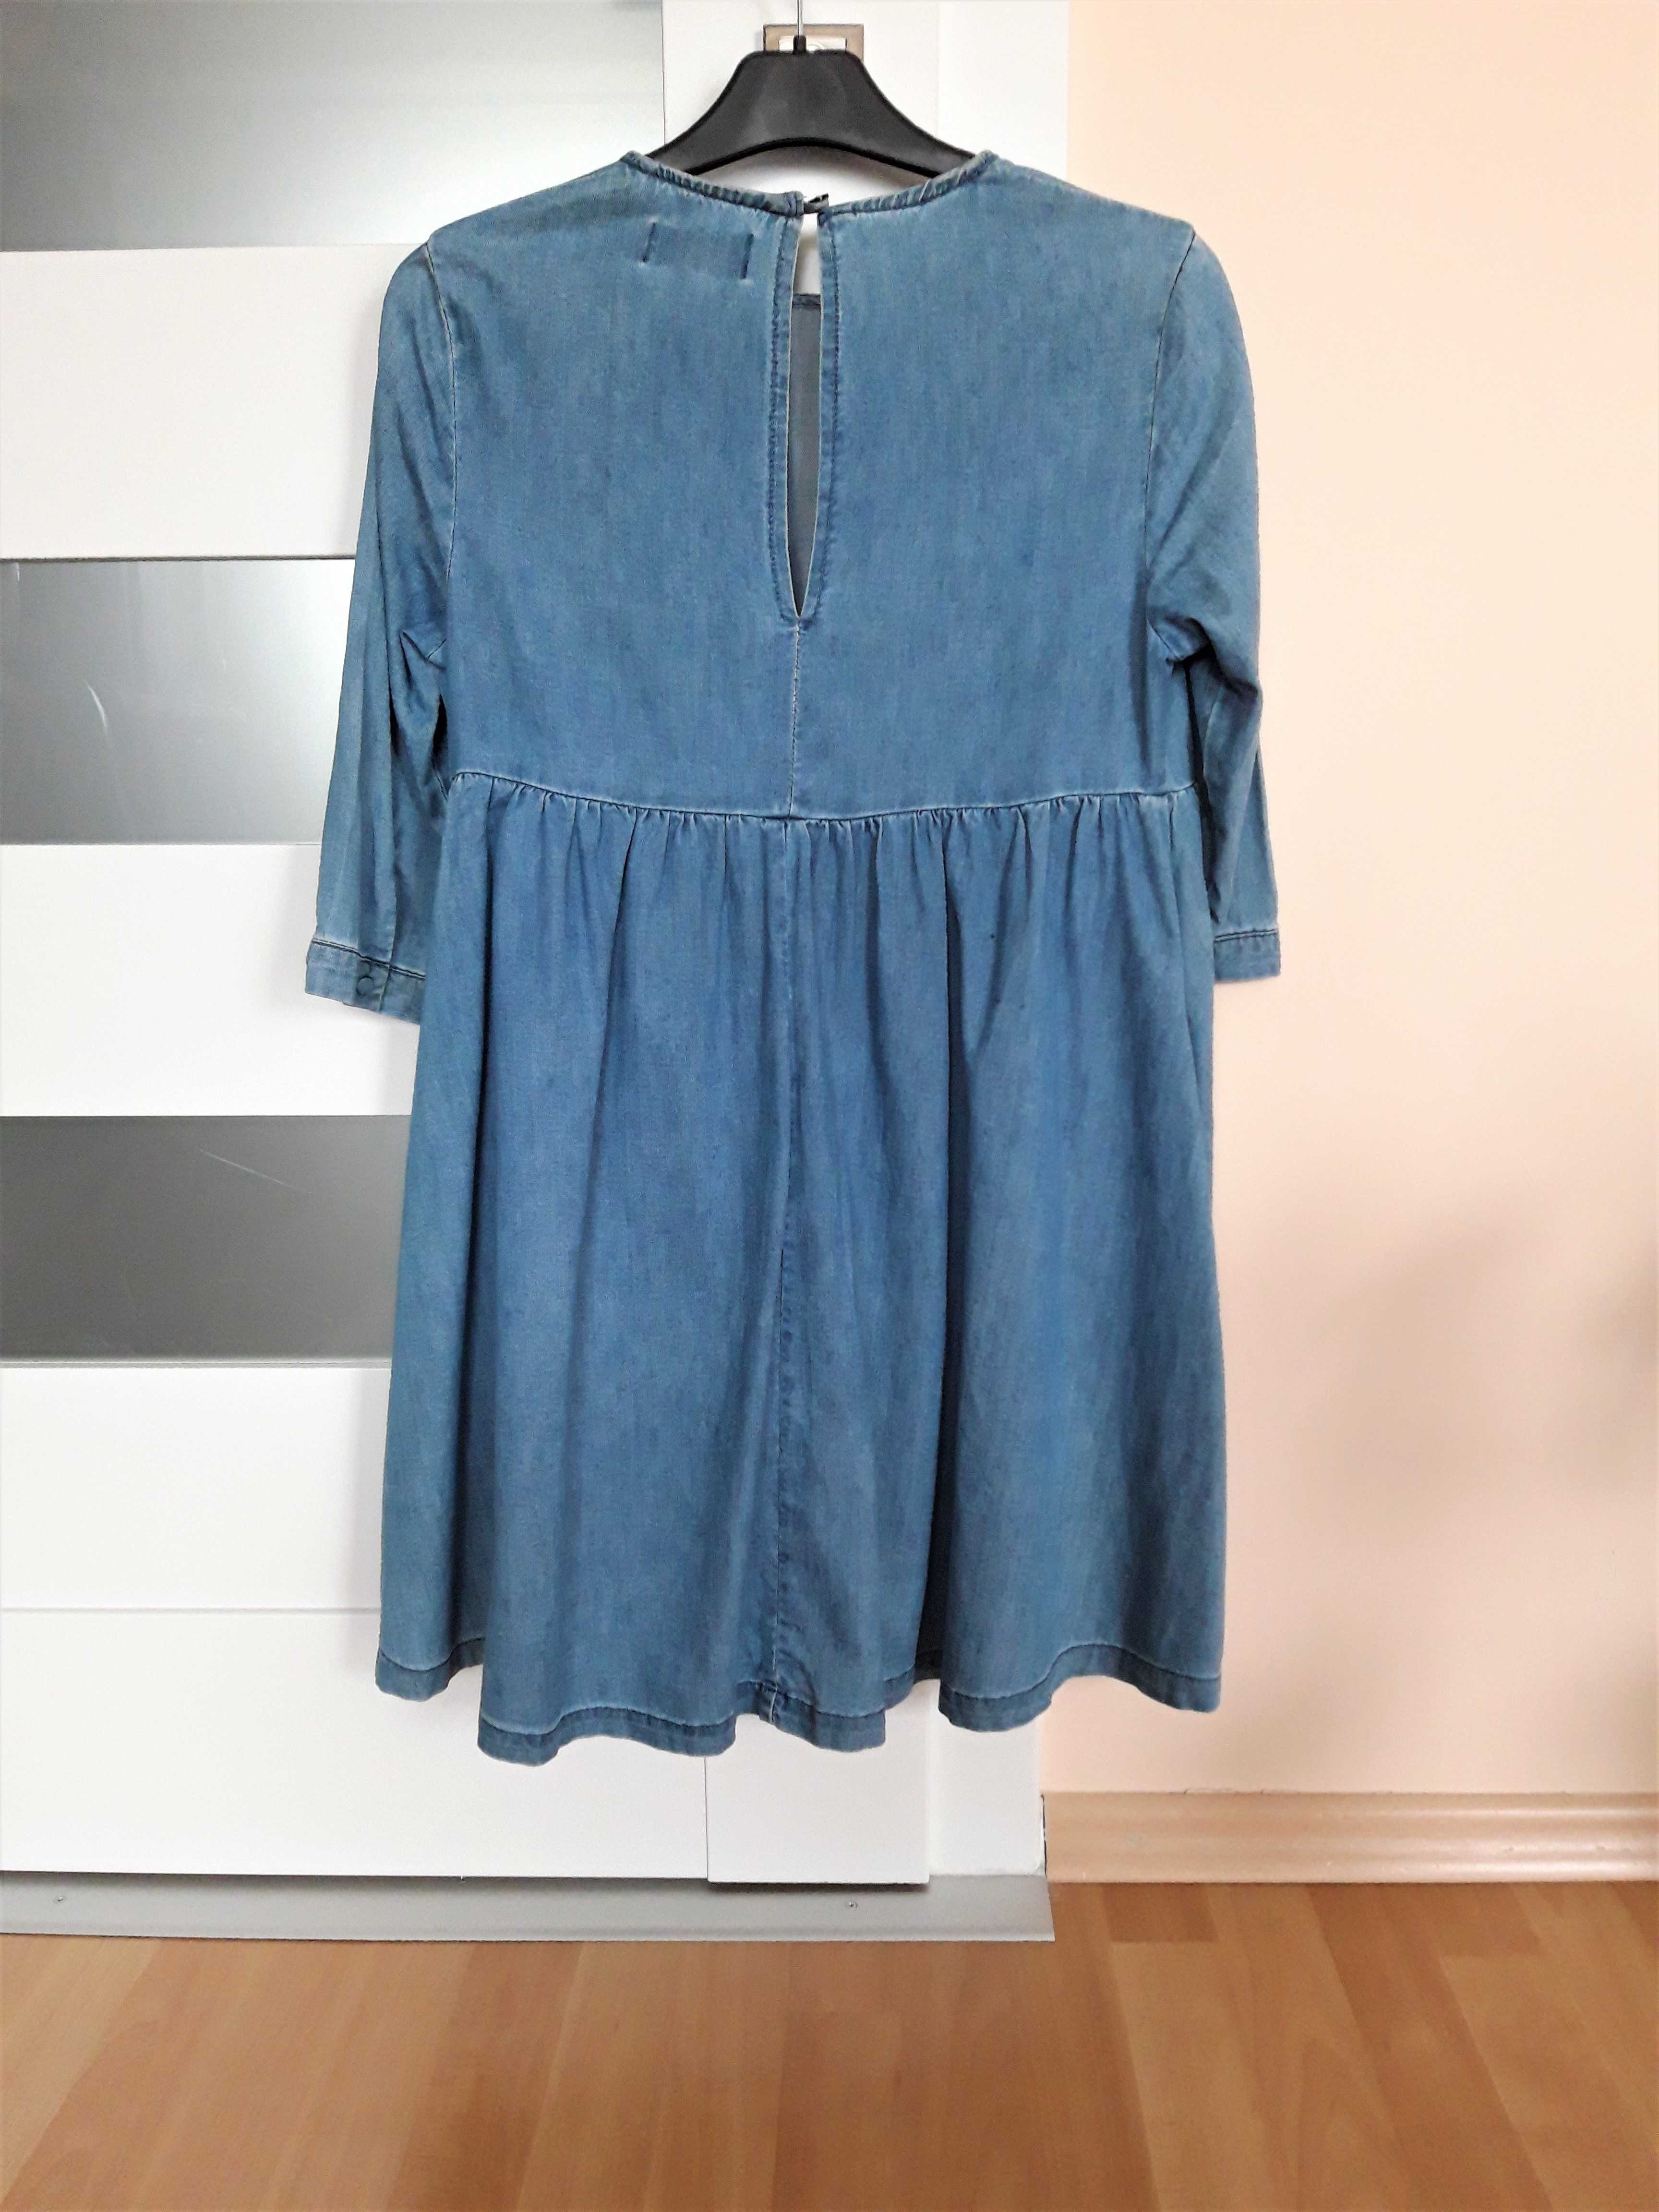 Sukienka z bawełny/jeansowa oversize r32 marka Mohito